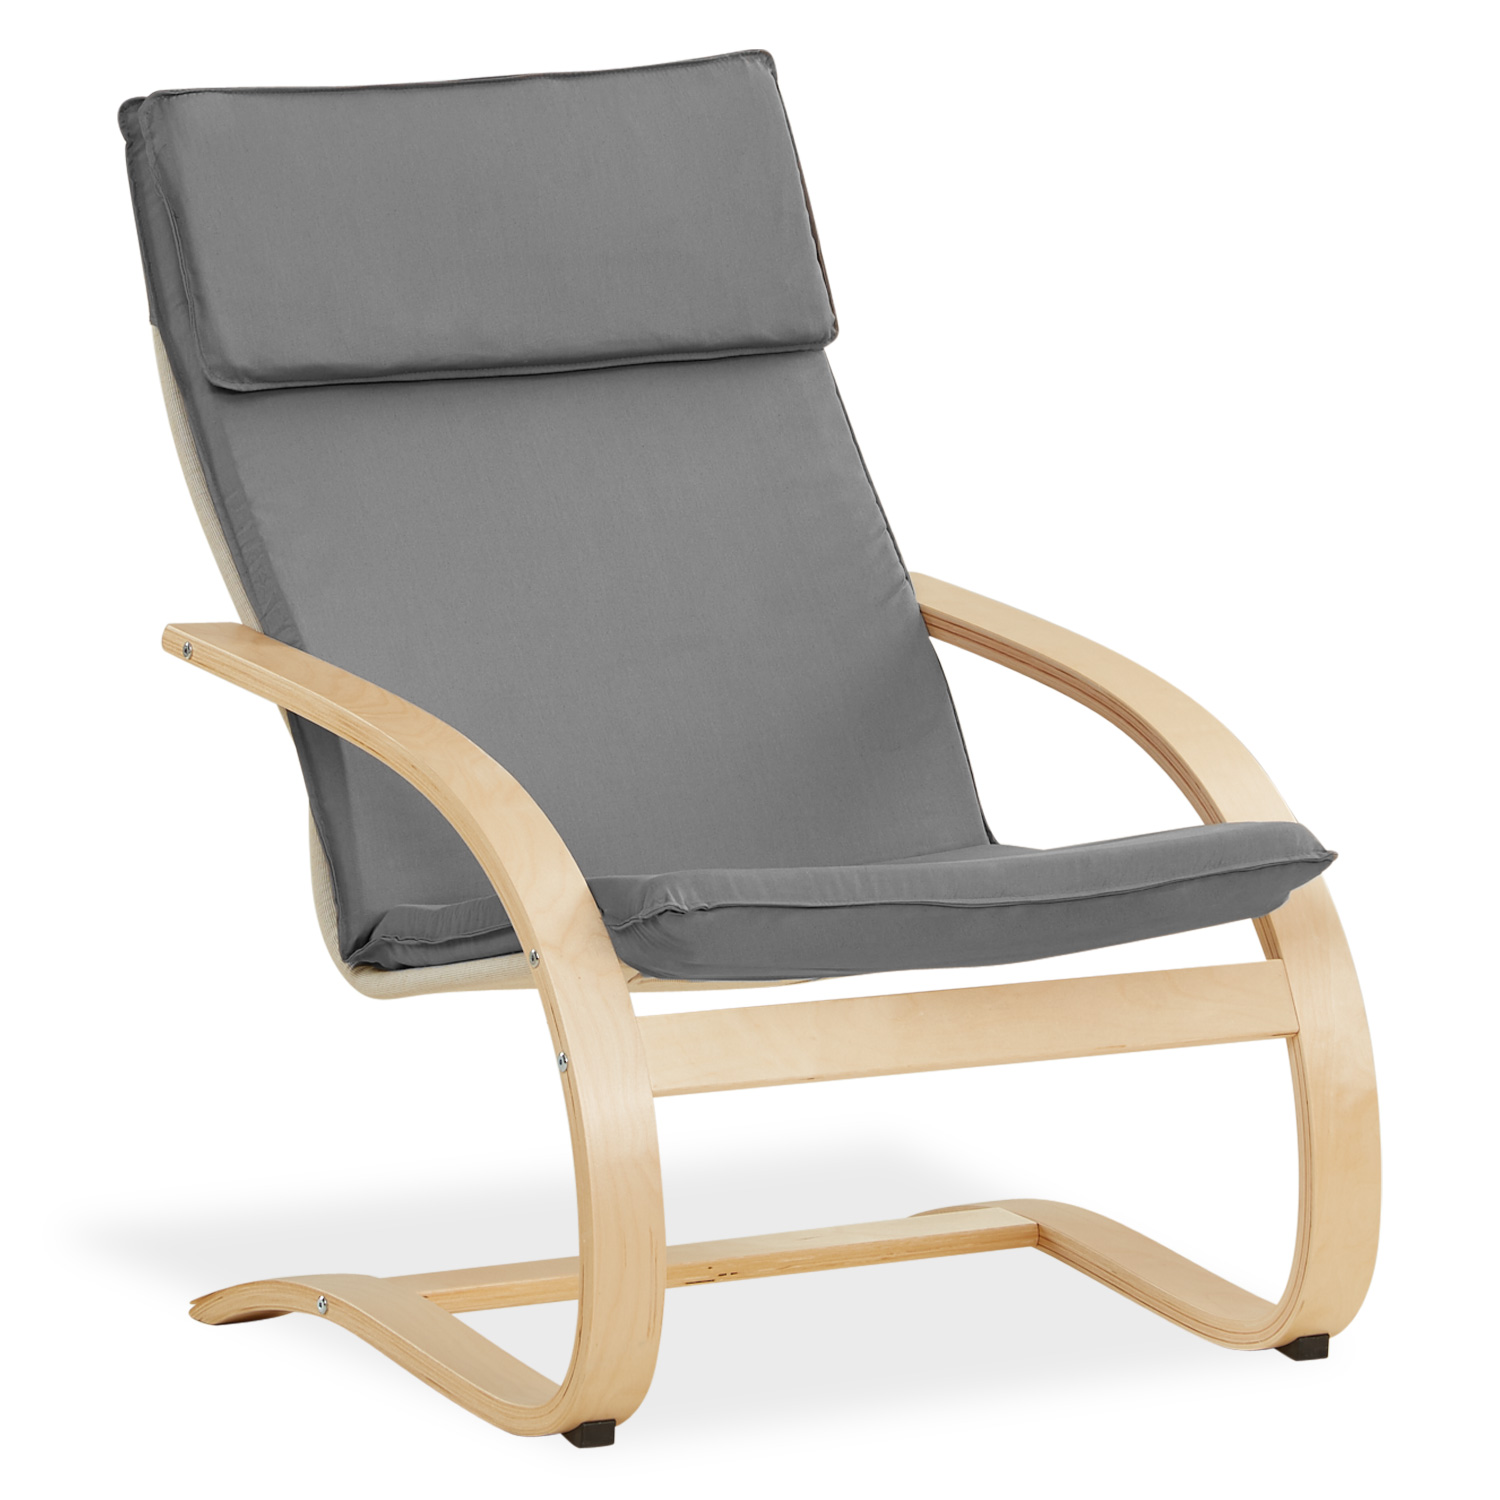 Recliner chair Grey Nursing chair Chaise lounge Eames chair Armchair Natural Wood